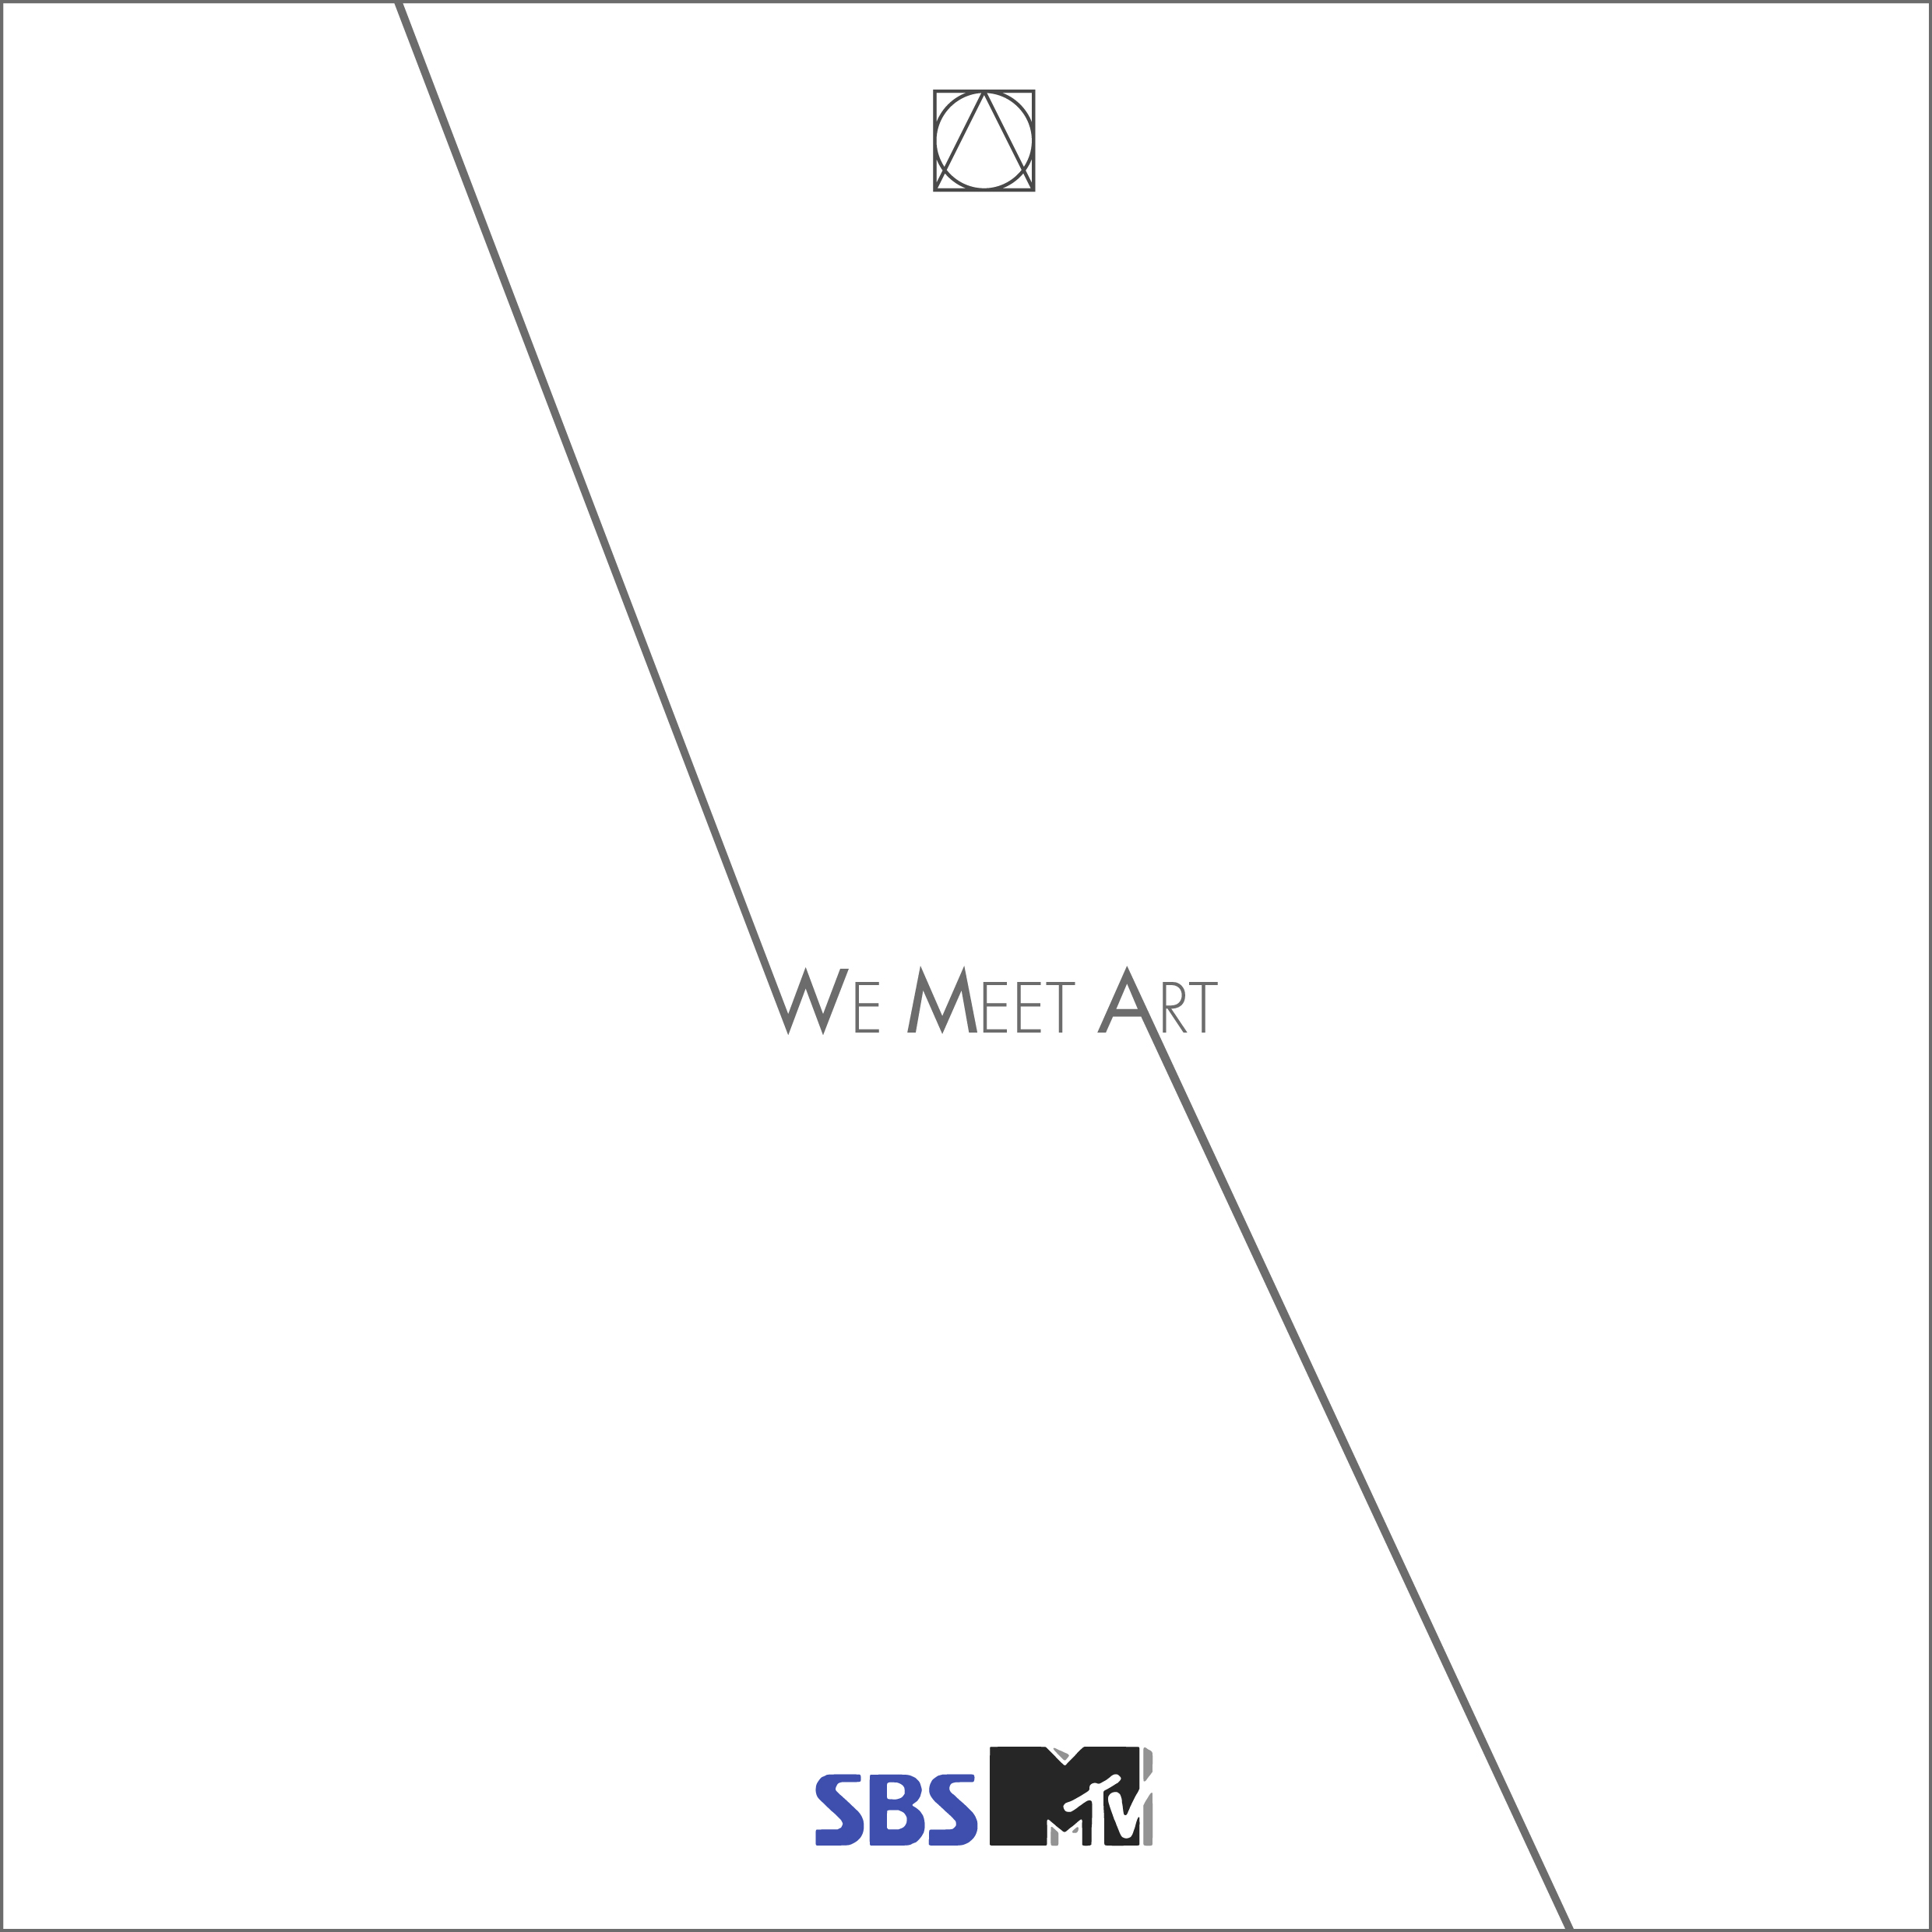 We Meet Art with SBSMtv